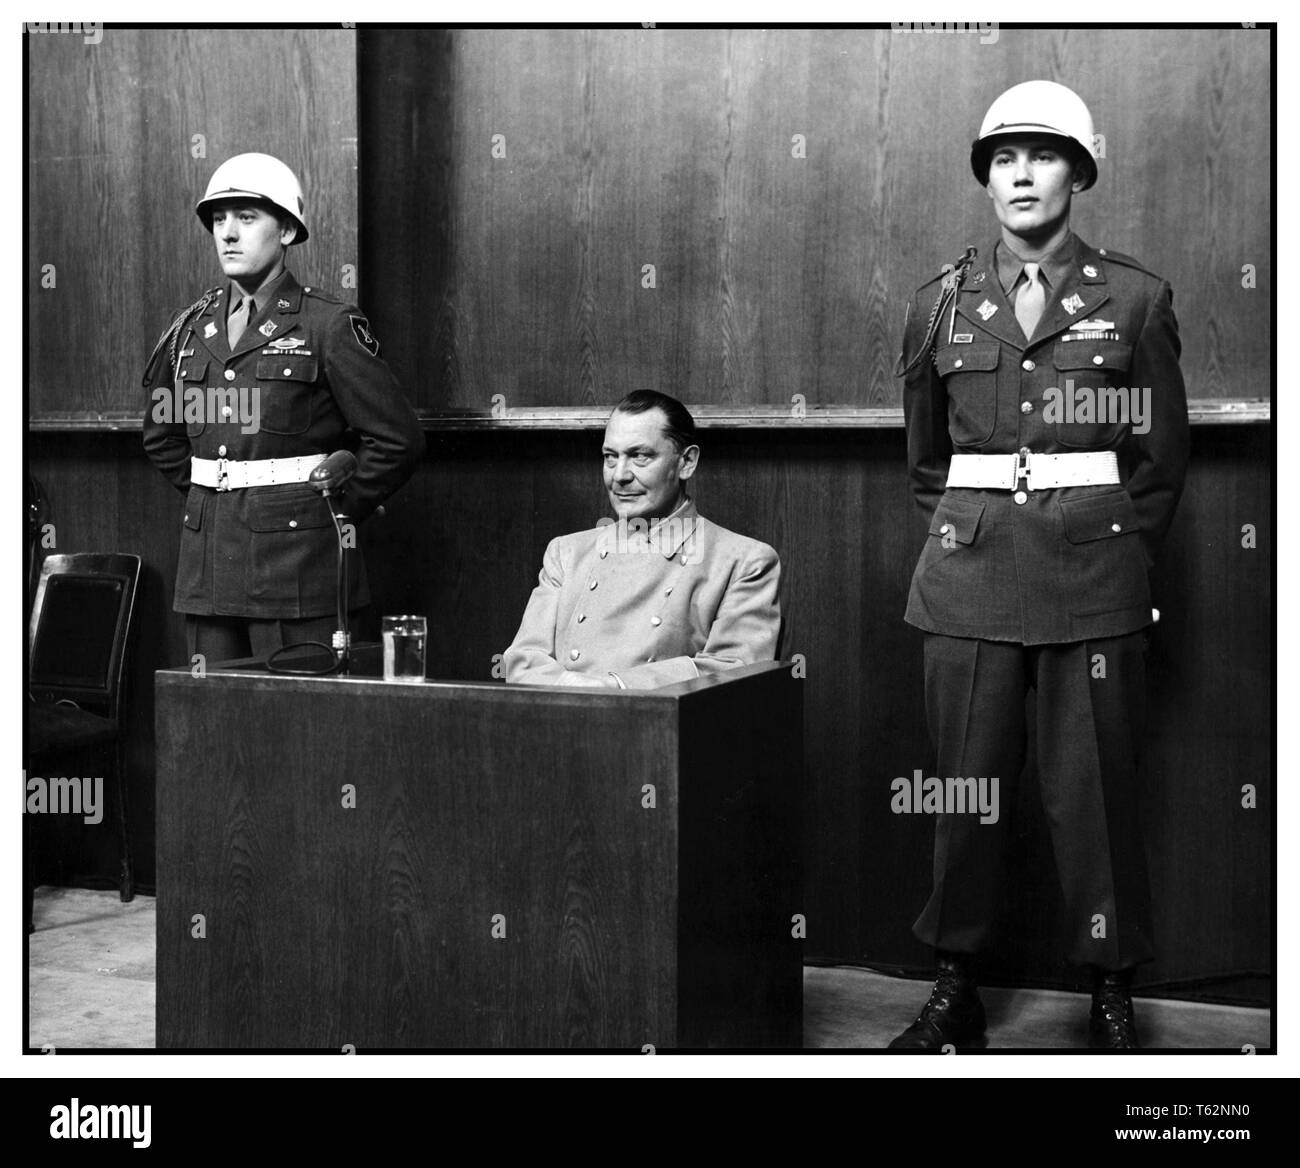 GOERING au procès de Nuremberg en expression énigmatique par l'ancien chef de la Luftwaffe Nazi Hermann Göring, au procès de Nuremberg, 1946 Hermann Goering, WW2, procès de Nuremberg Nuremberg Allemagne Banque D'Images